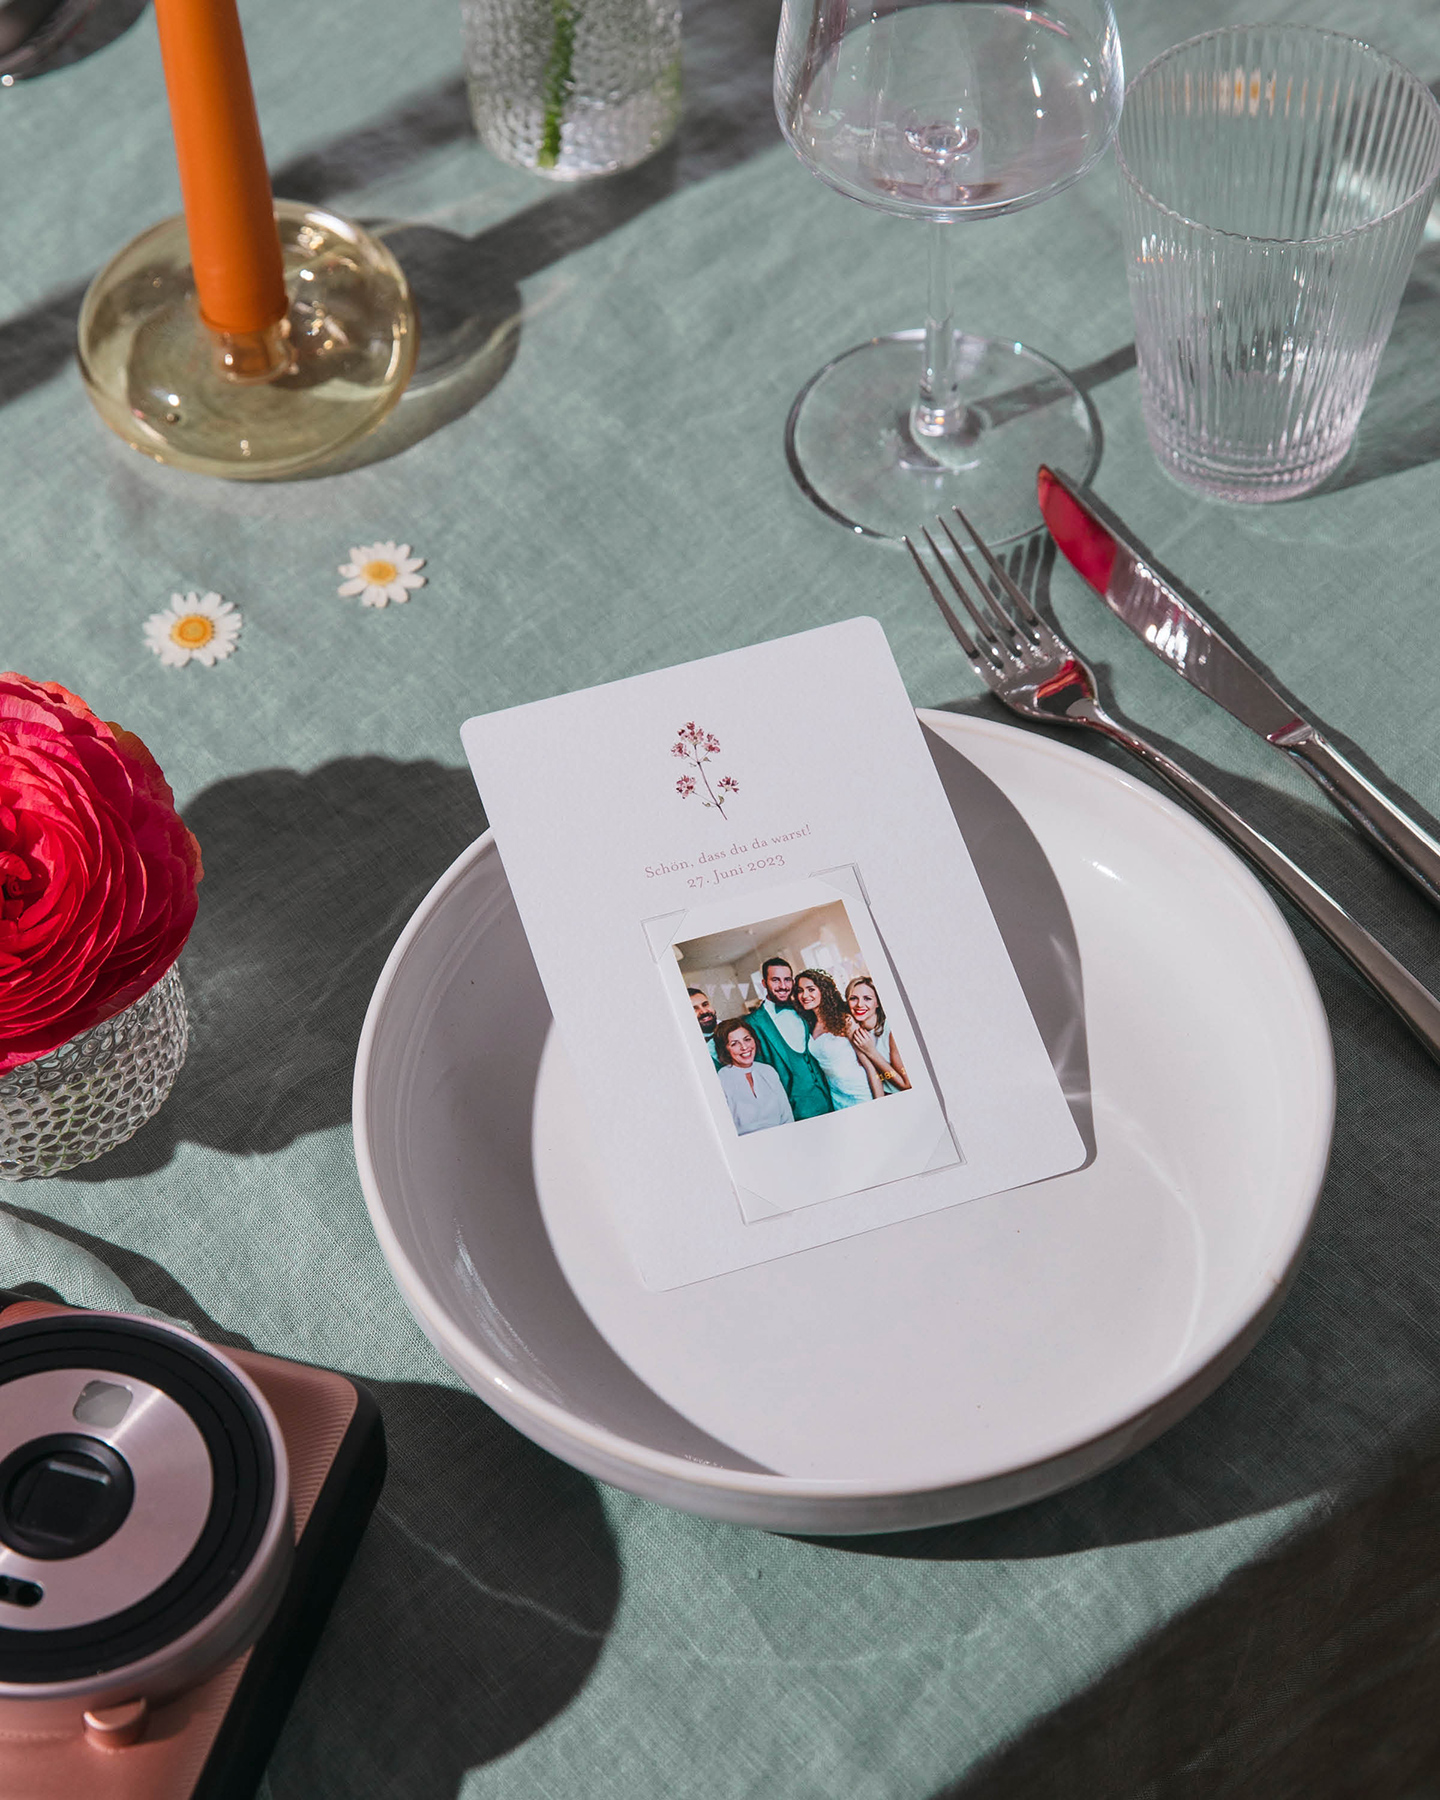 Erinnerungsfoto von der Hochzeit als Gastgeschenk auf dem Teller dekoriert. 